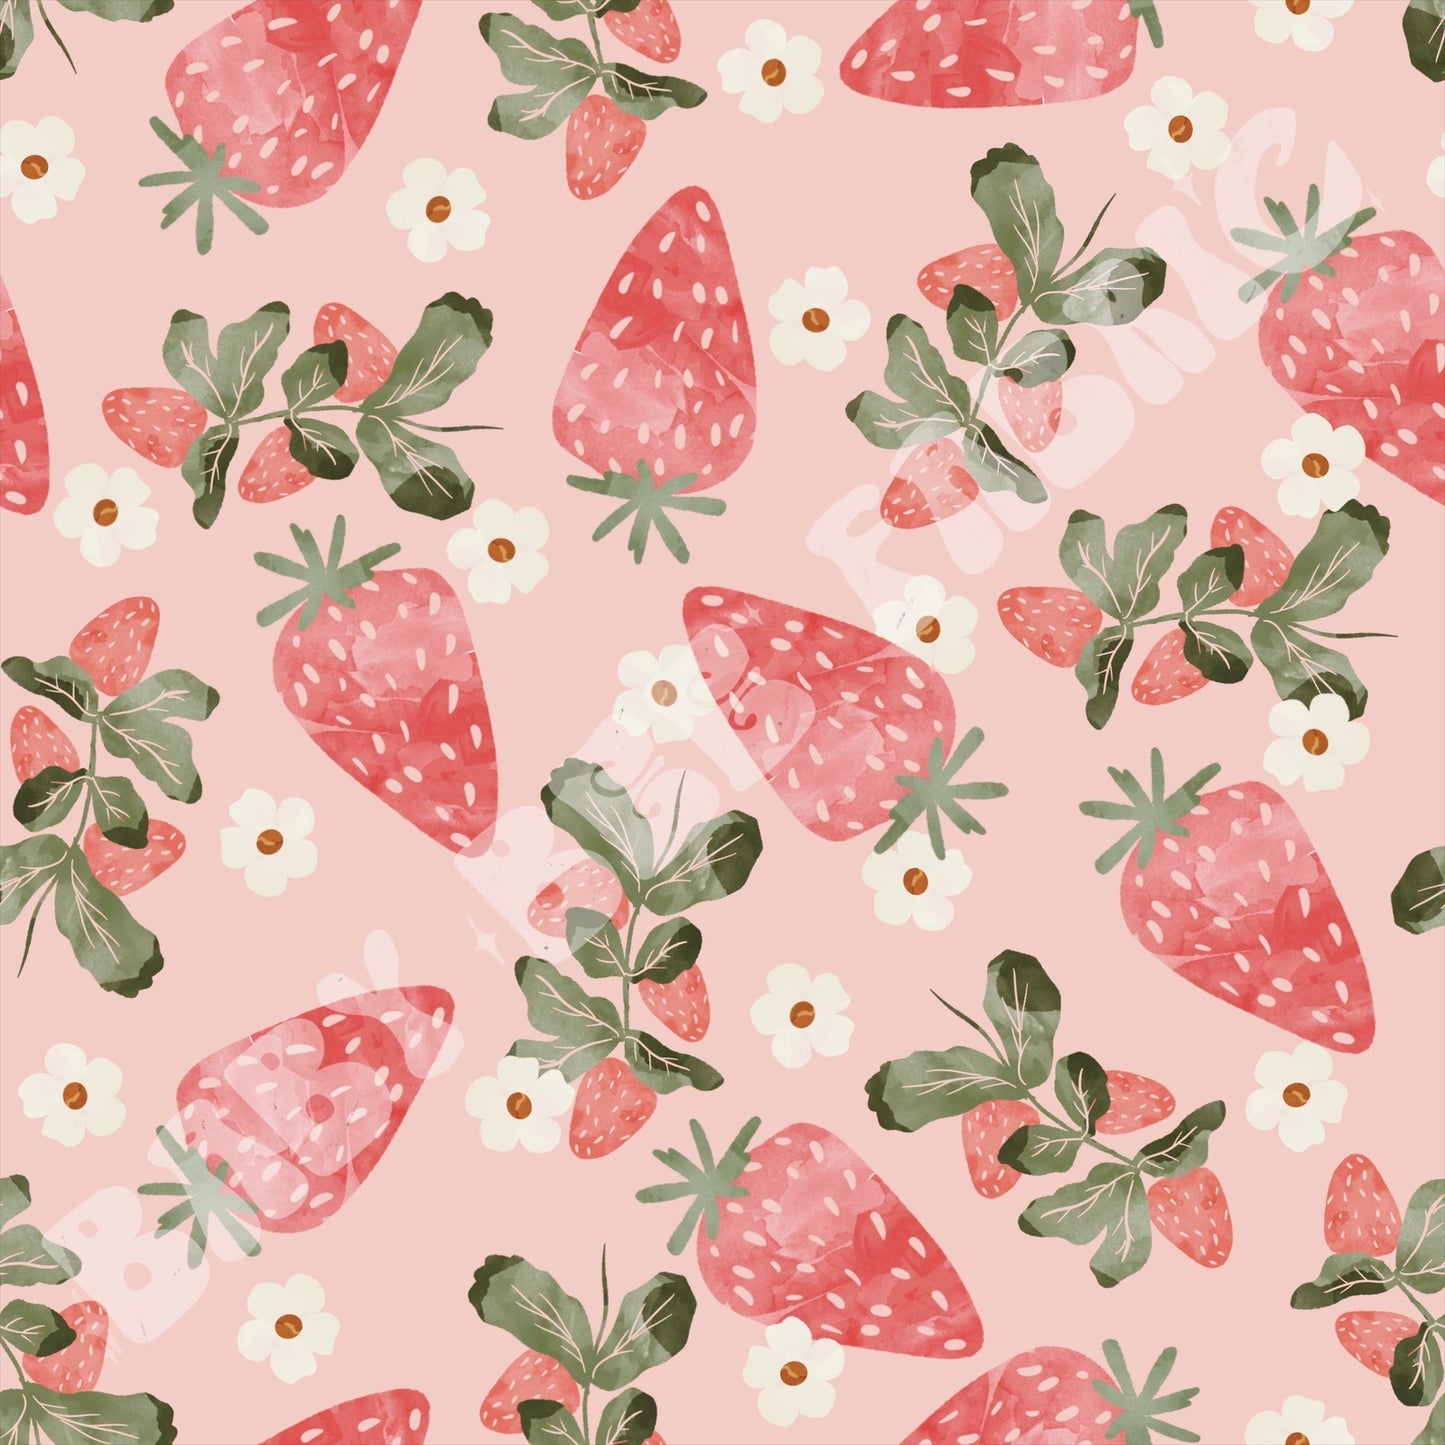 Strawberry Daisy